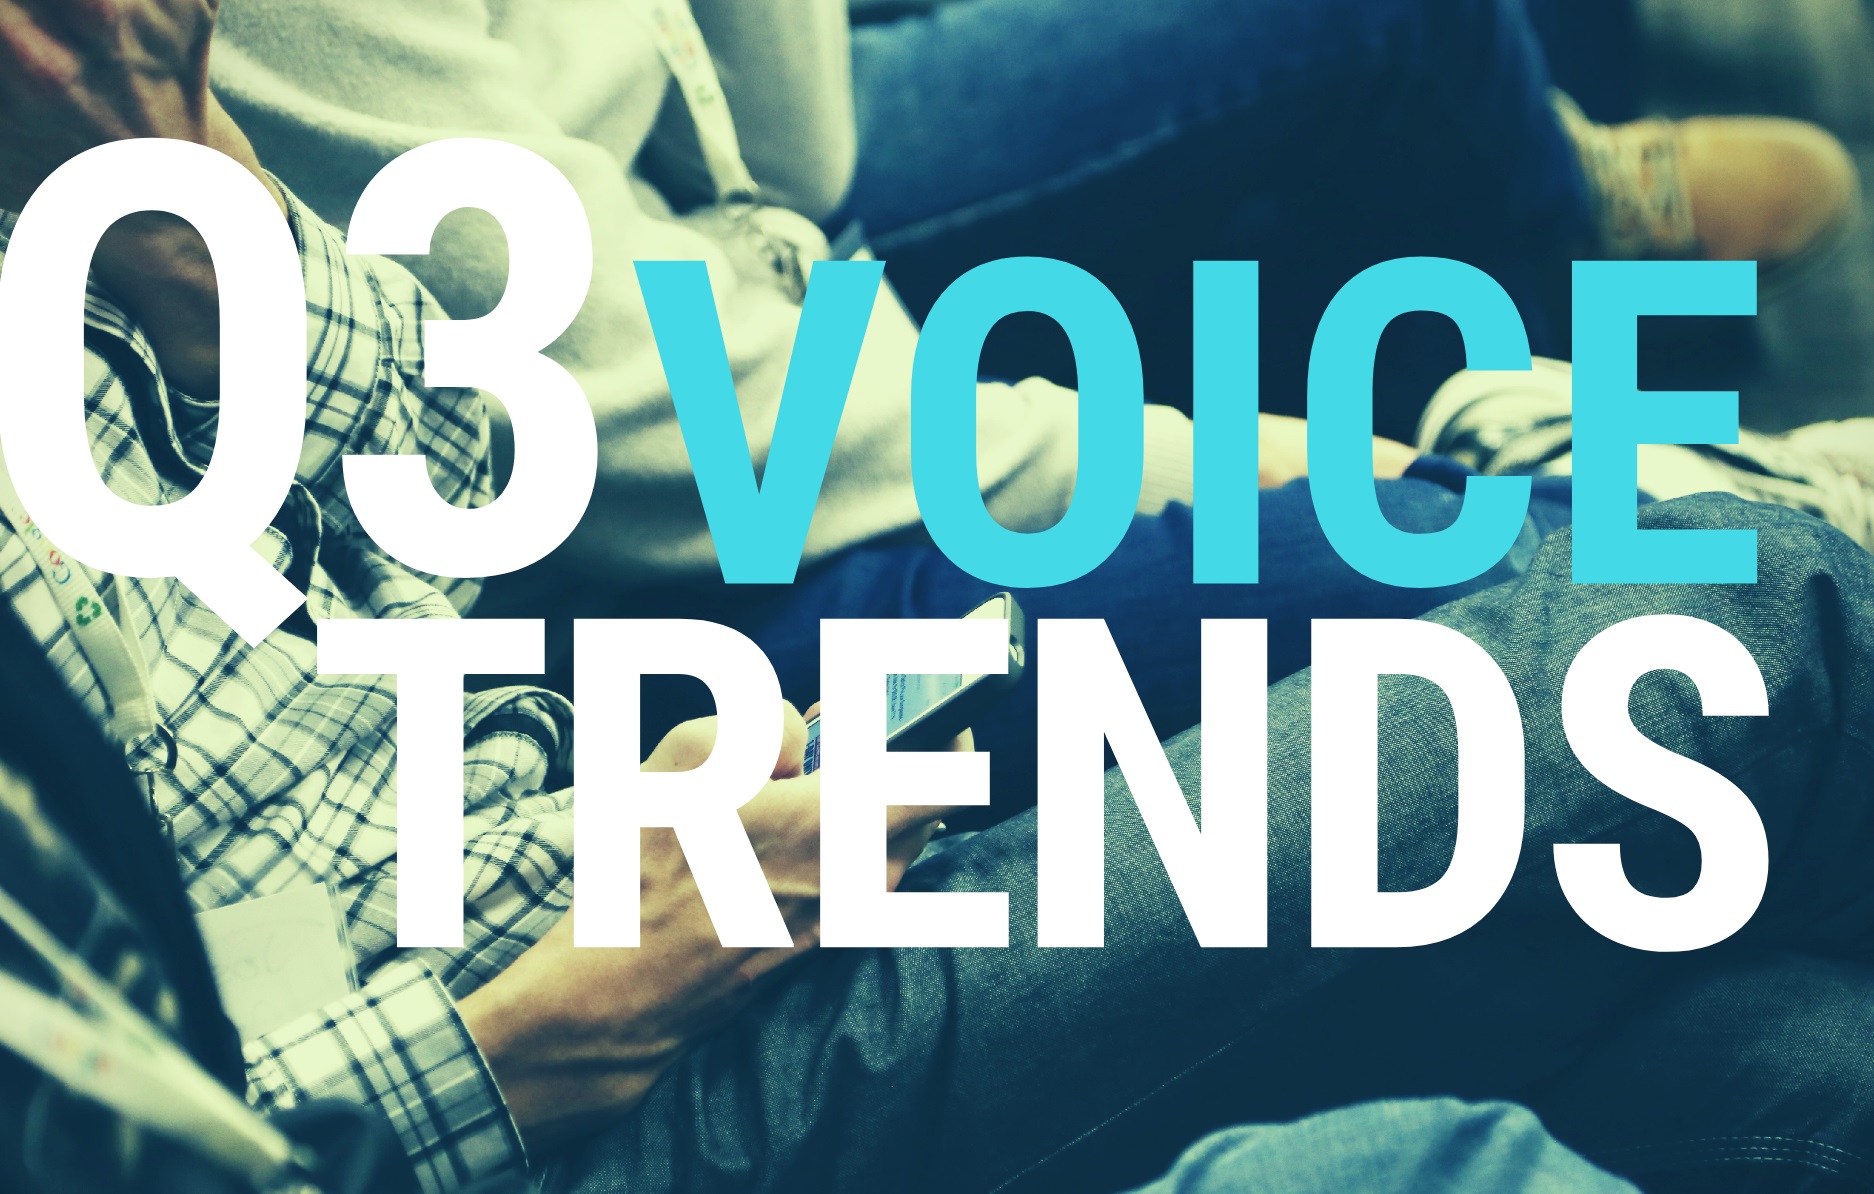 q3, voice trends, furones, programapublicidad,